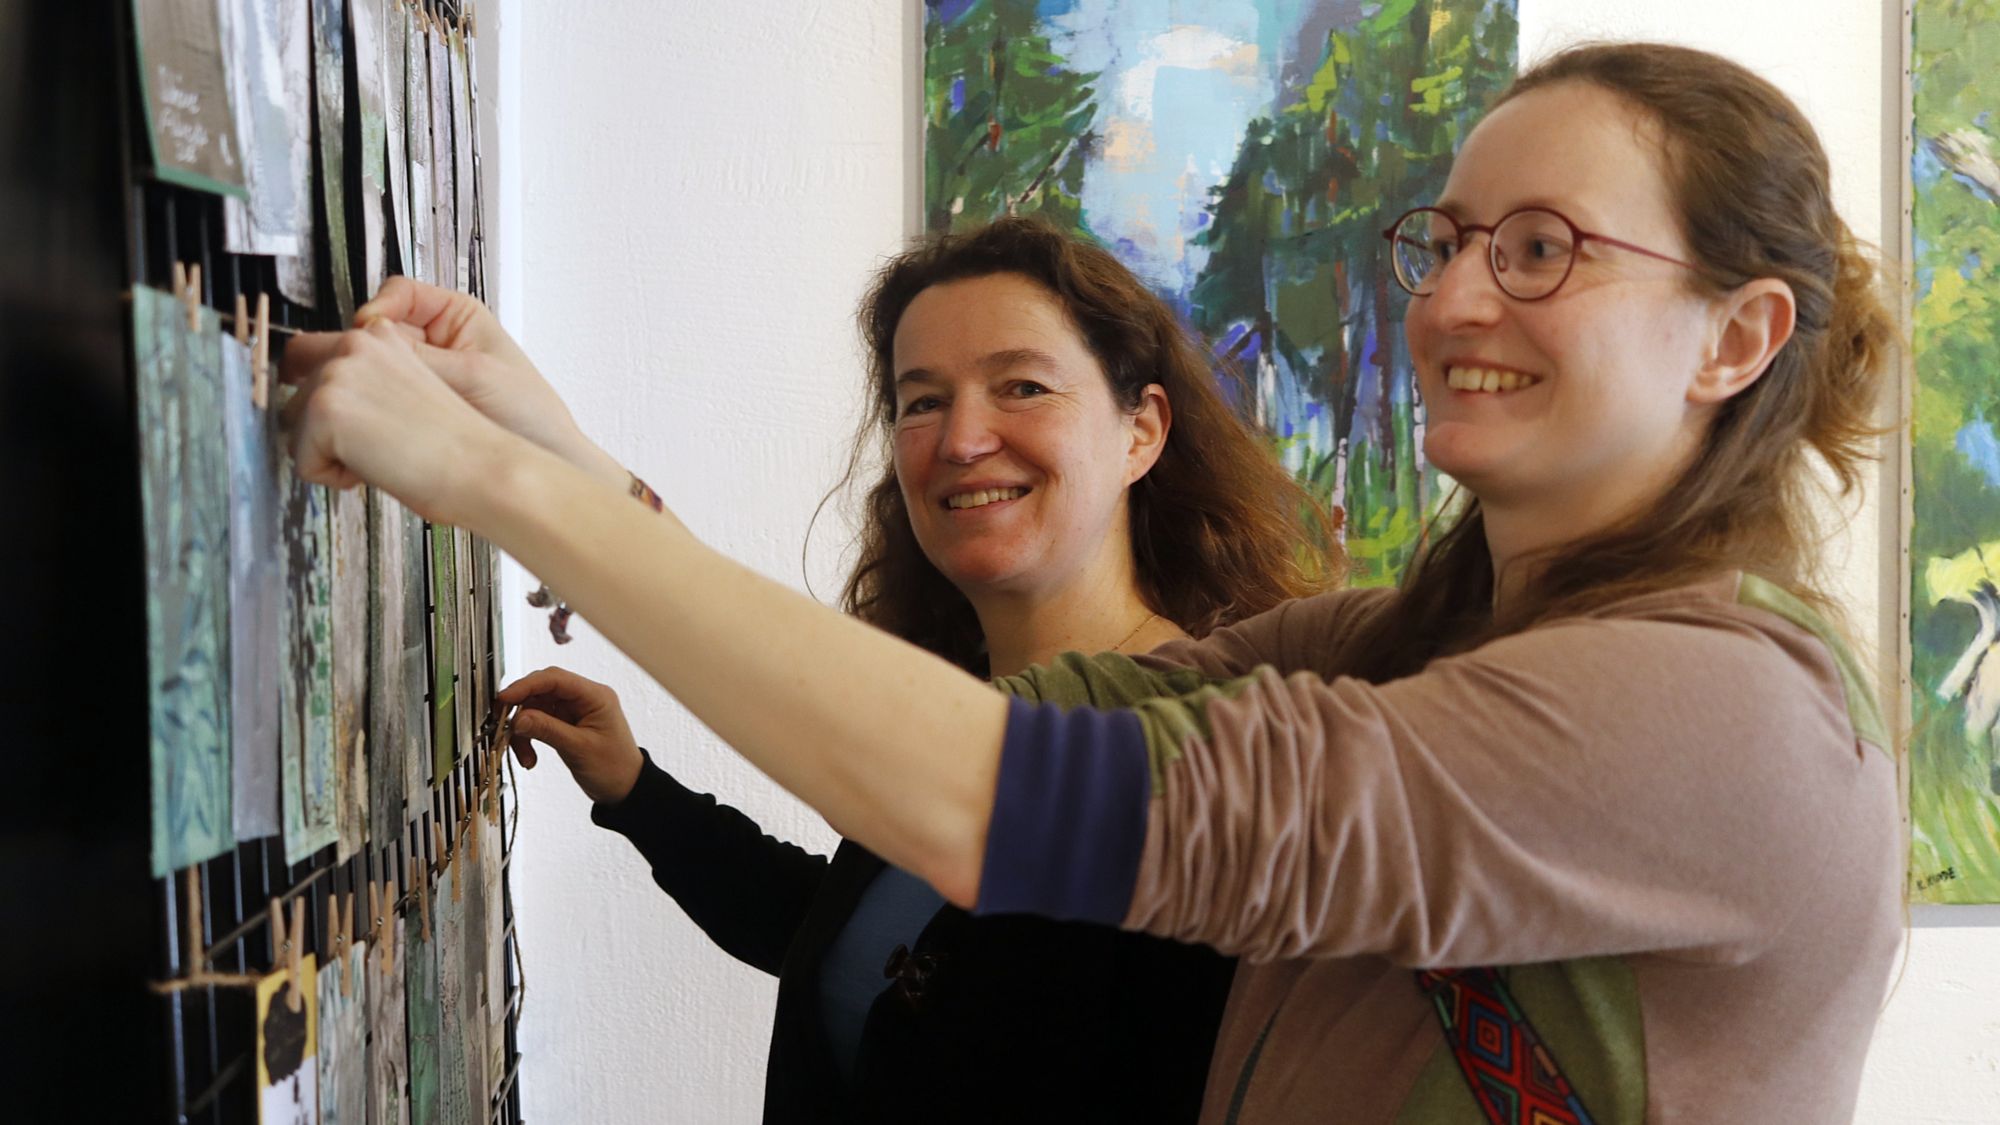 Initiatorin Ina Krahl und Künstlerin Andrea Strauch beim Hängen der Ausstellung Foto: Anton Launer